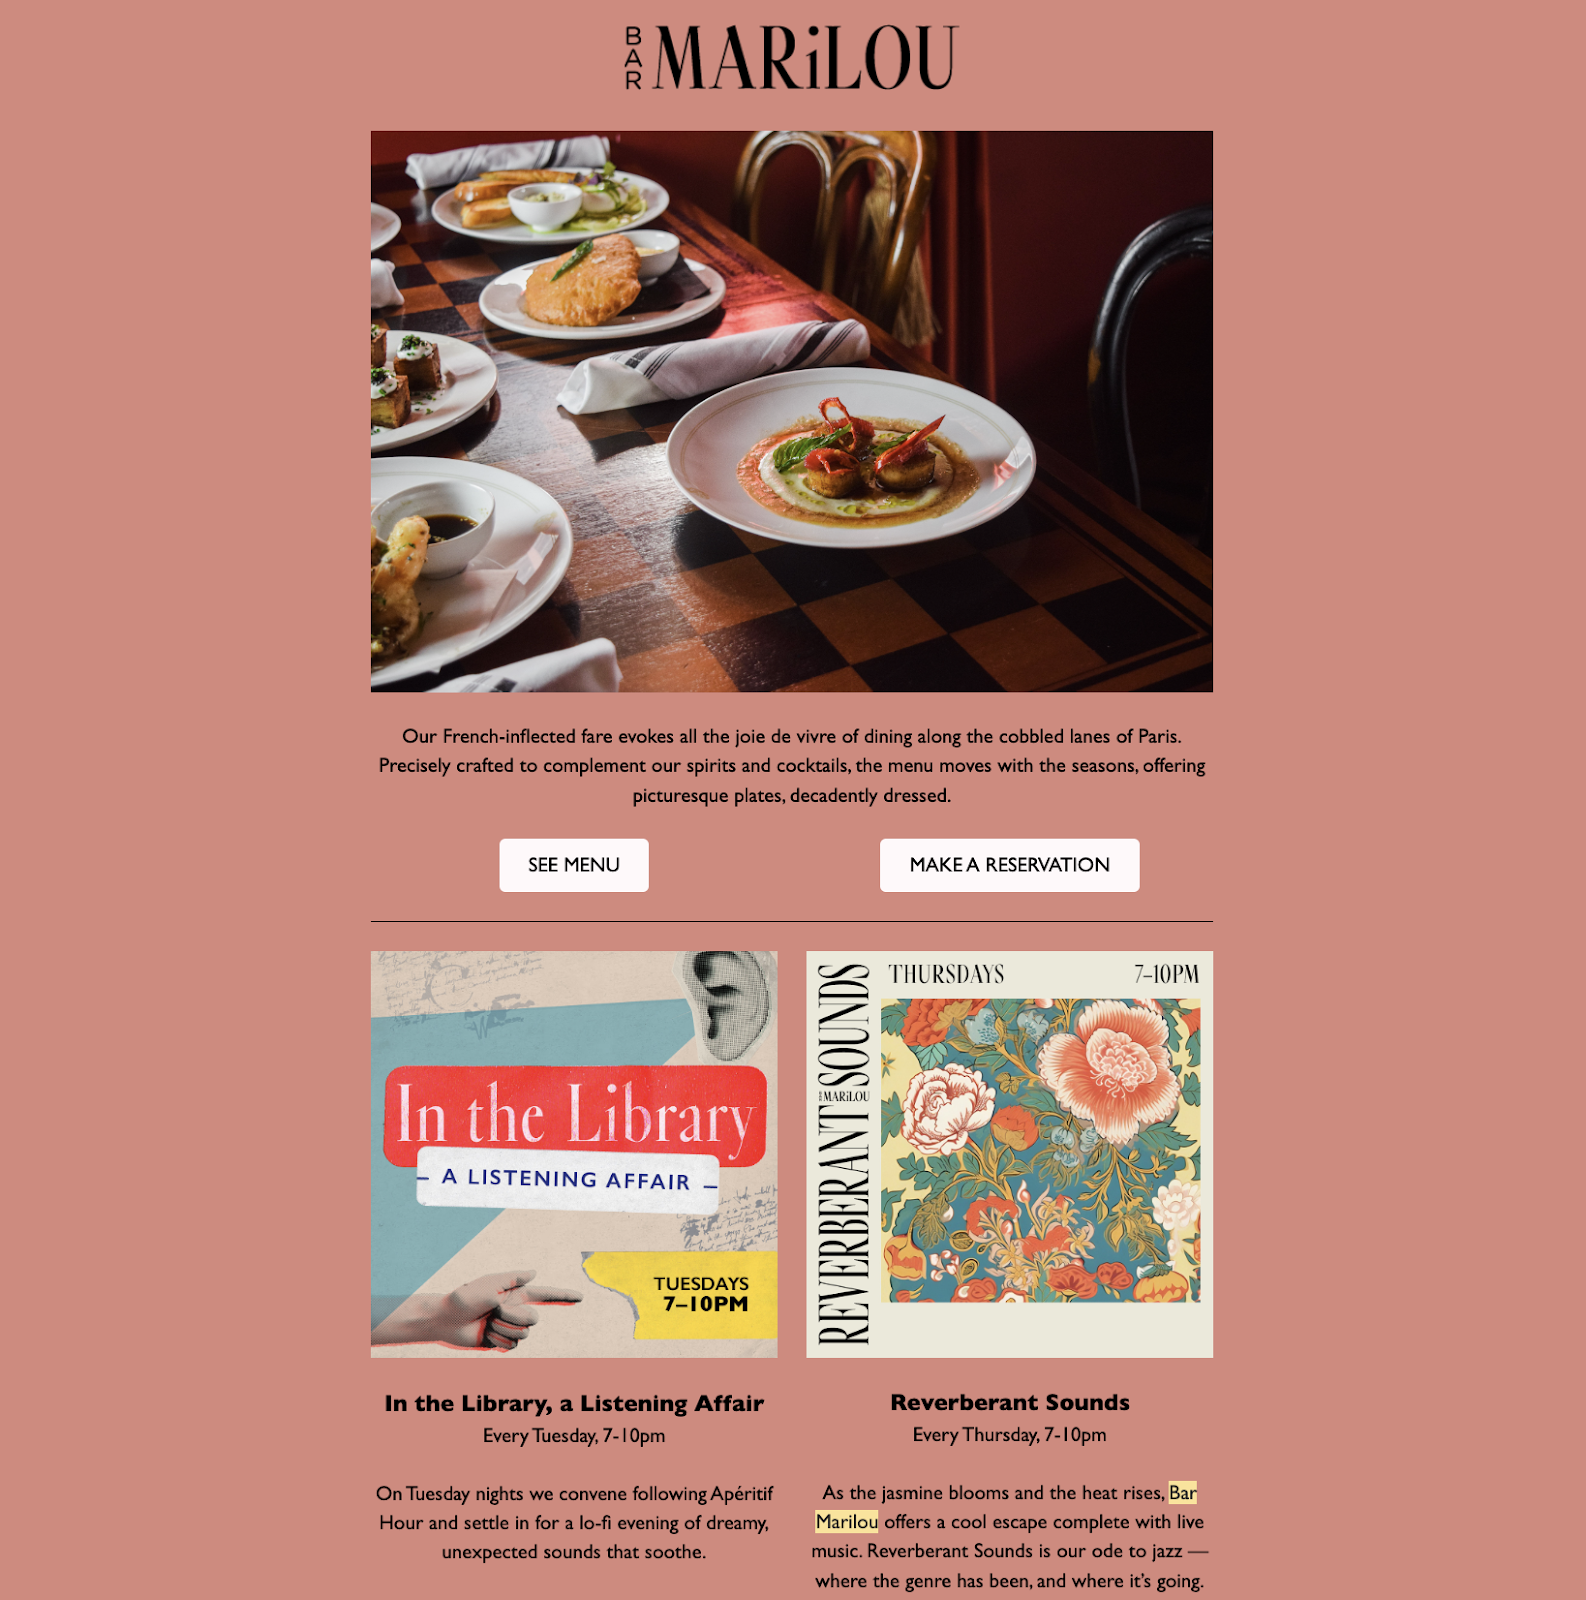 레스토랑 마케팅 아이디어: 뉴올리언스에 본사를 둔 레스토랑 Bar Marilou의 이메일 뉴스레터. 이메일에는 플레이팅된 요리의 고화질 사진, 메뉴를 보거나 예약할 수 있는 CTA 버튼, 예정된 두 가지 이벤트에 대한 정보가 포함되어 있습니다.